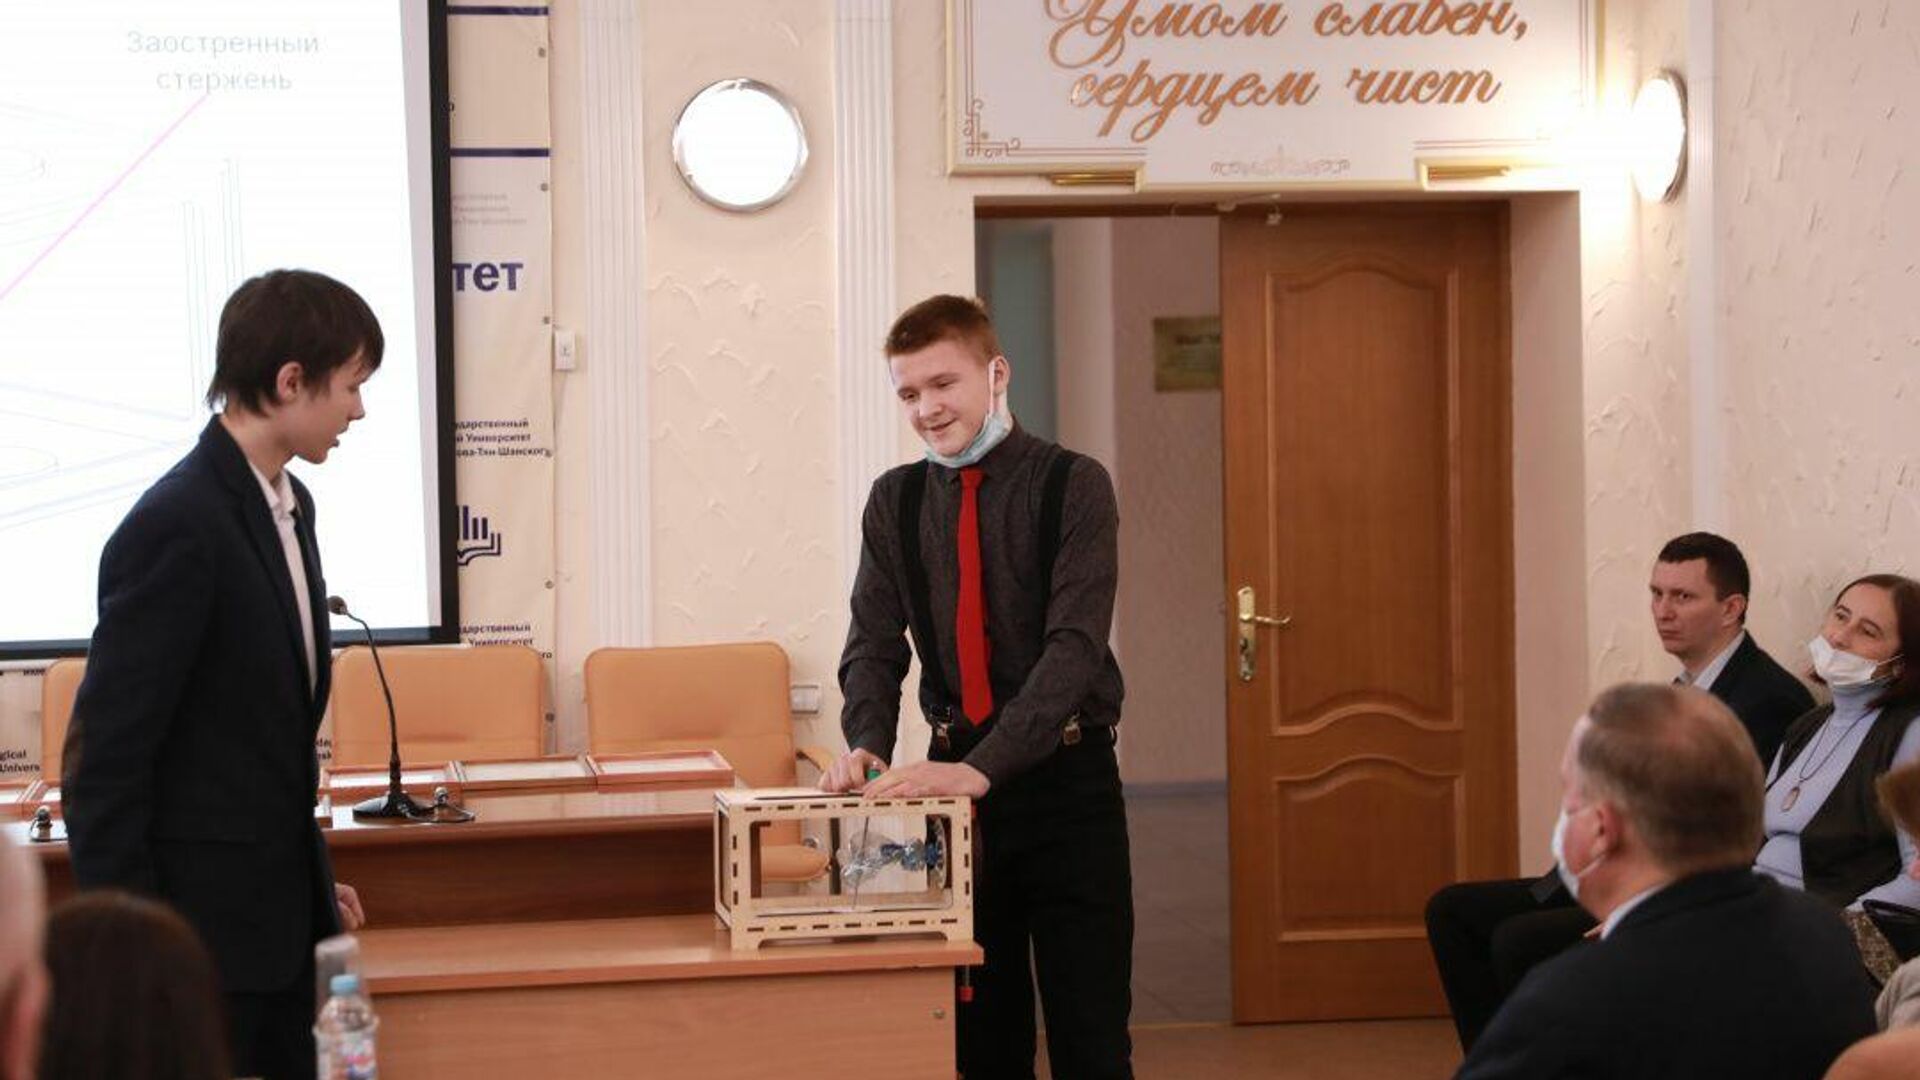 Участники конкурса Юный изобретатель Липецкой области 2021 - РИА Новости, 1920, 23.12.2021